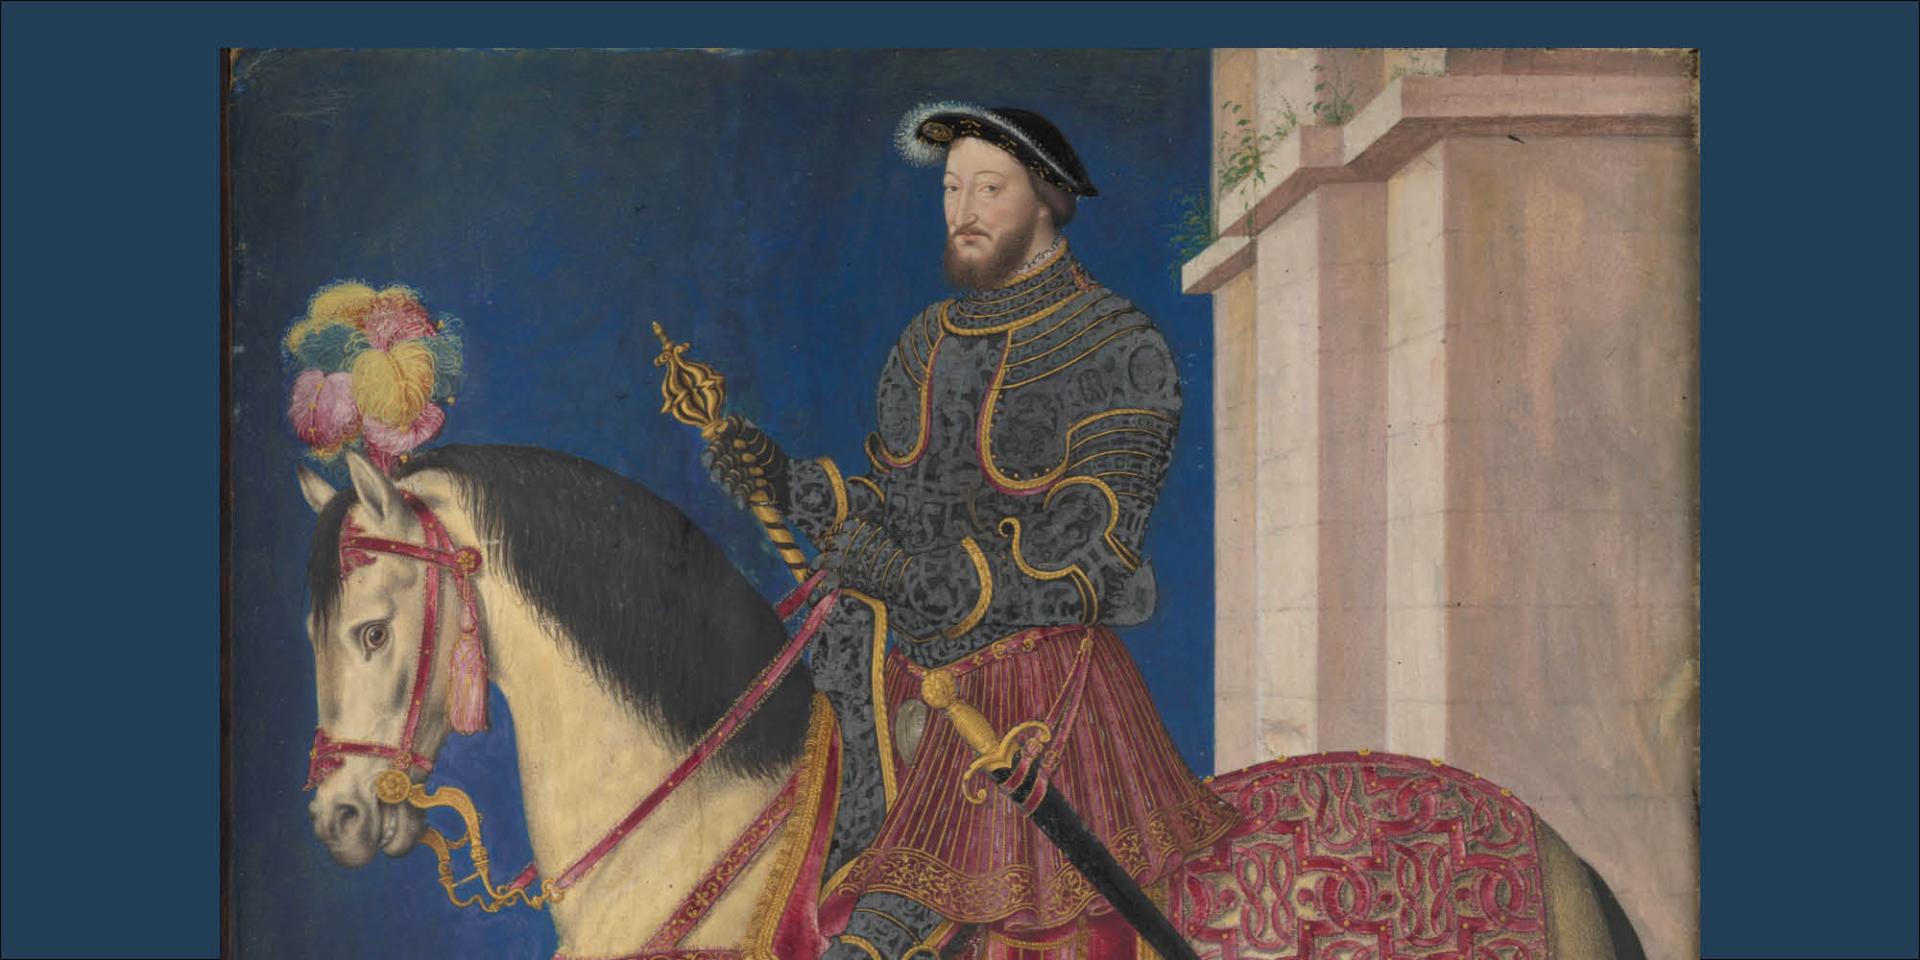 François Ier à cheval, Jean Clouet (attr.) vers 1530